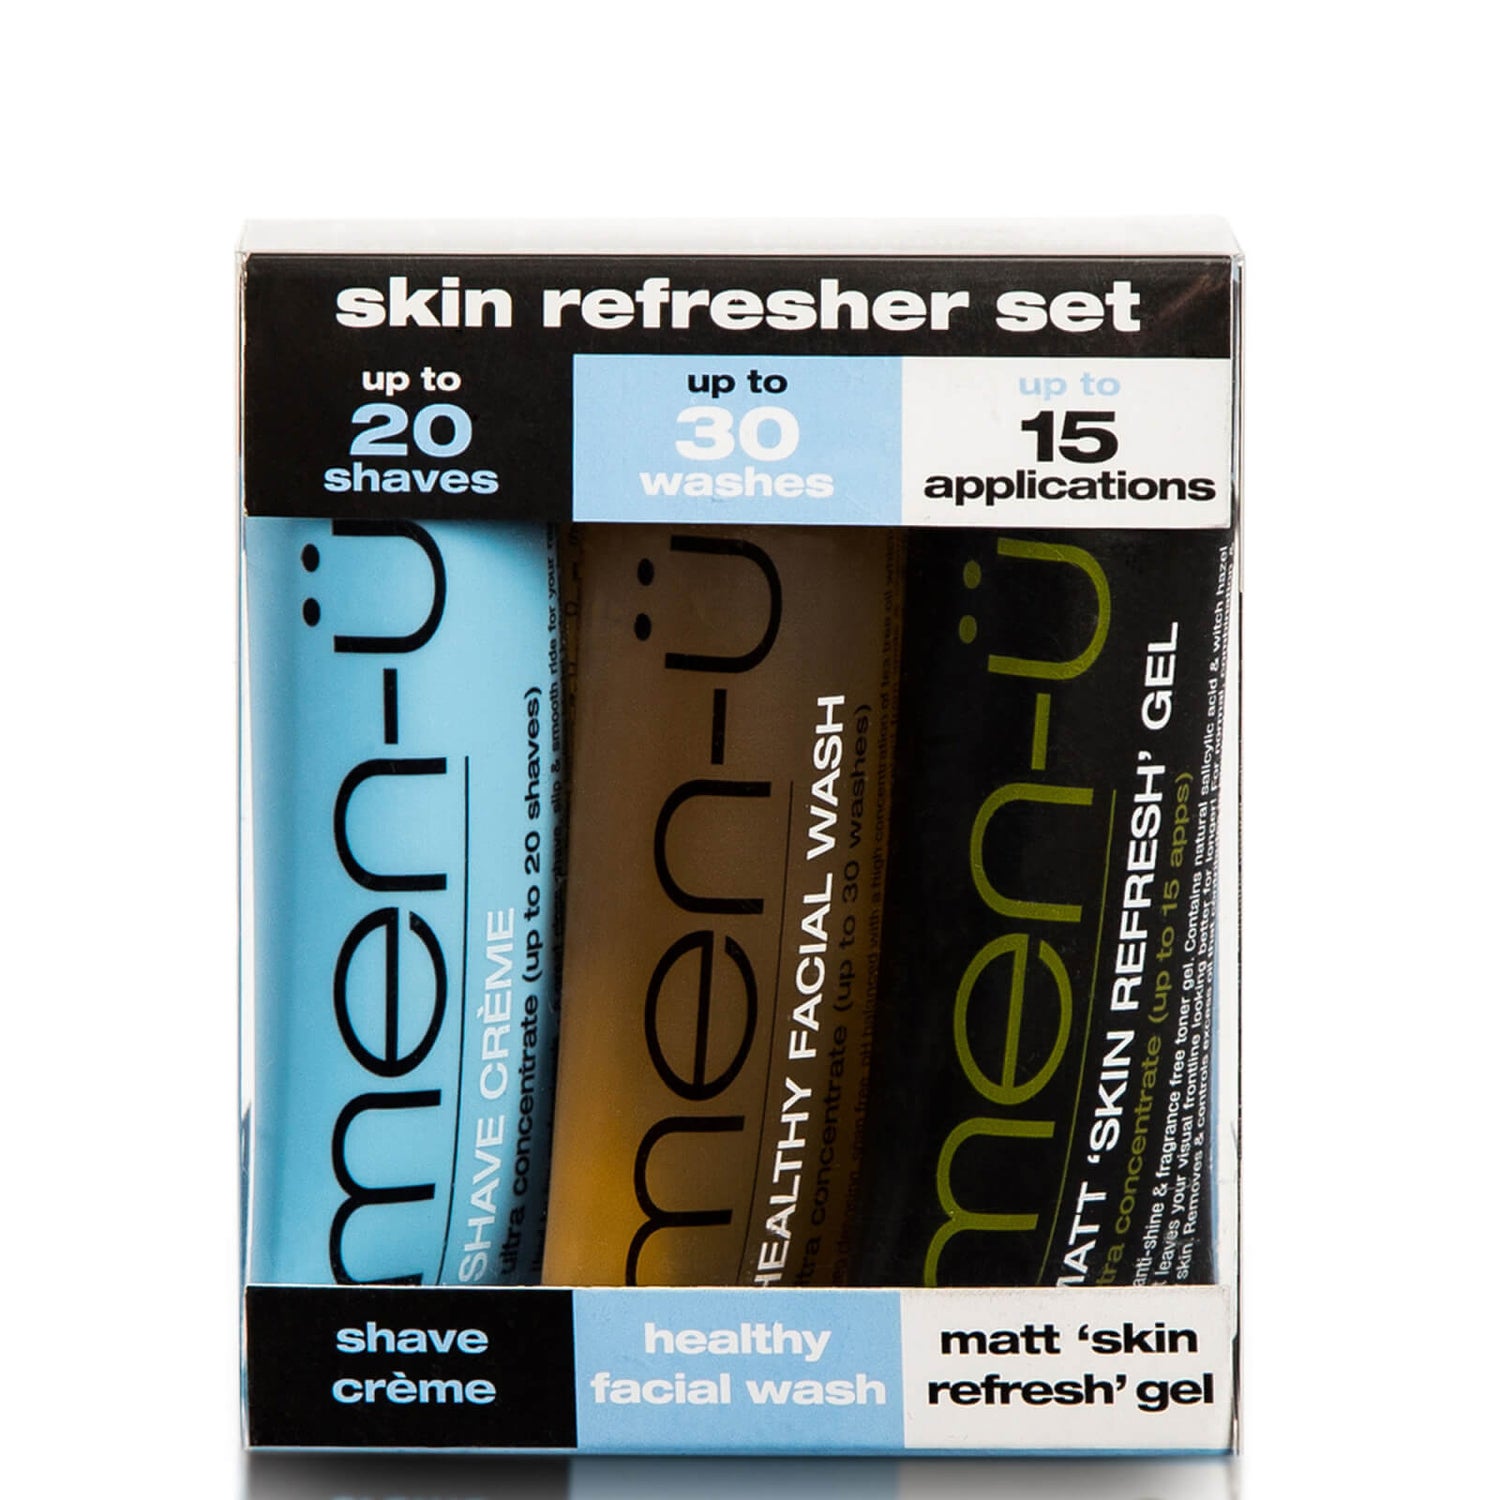 men-u skin refresher set 3 x 0.5 oz.